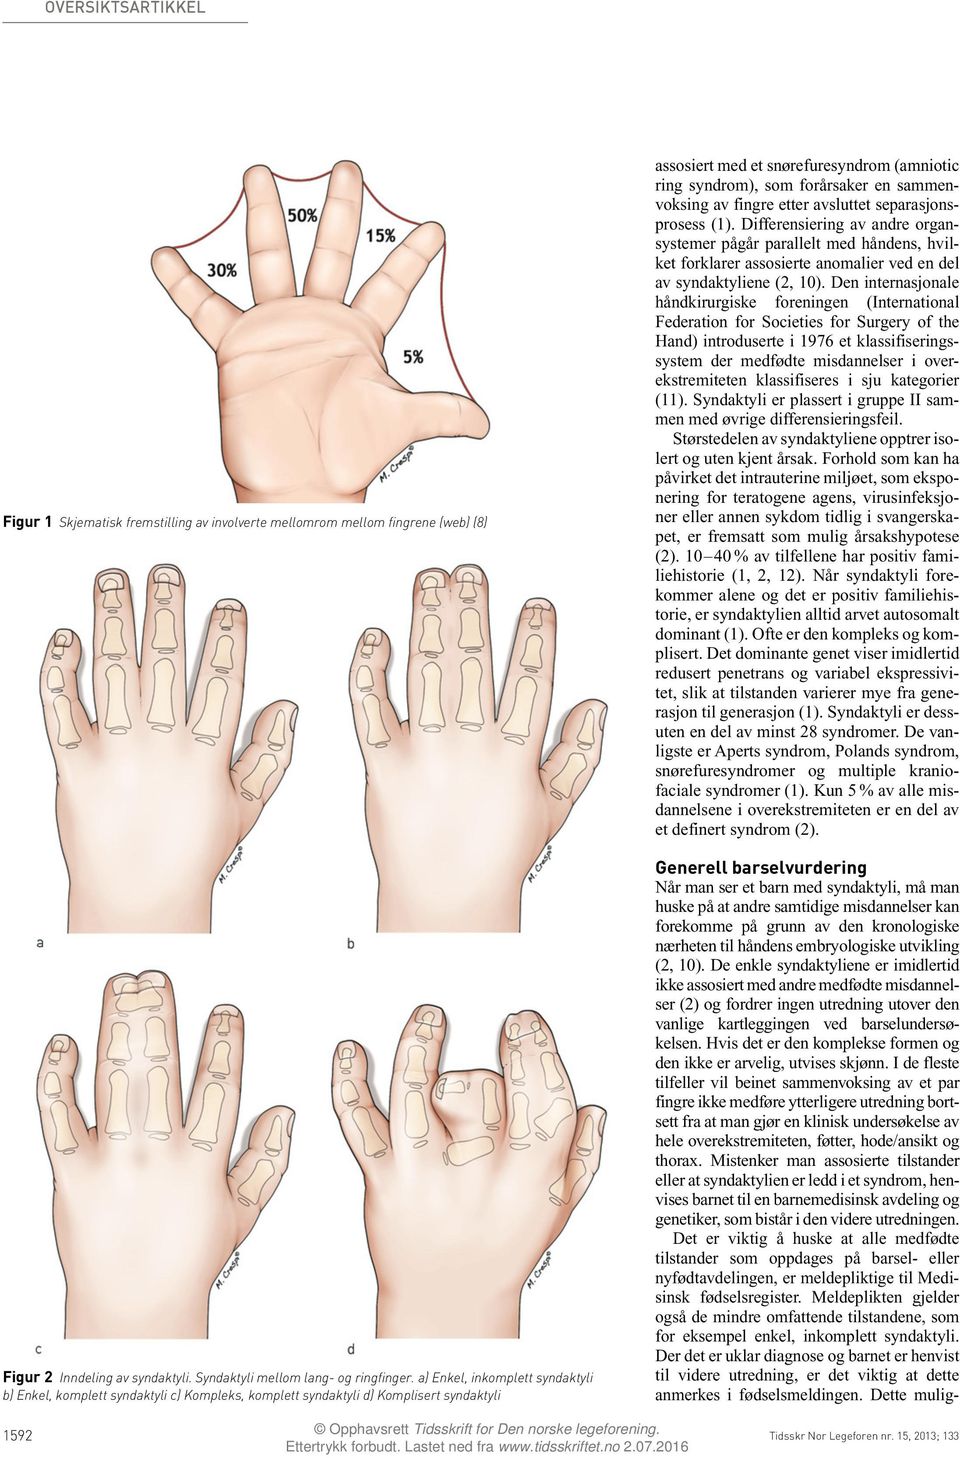 Den internasjonale håndkirurgiske foreningen (International Federation for Societies for Surgery of the Hand) introduserte i 1976 et klassifiseringssystem der medfødte misdannelser i